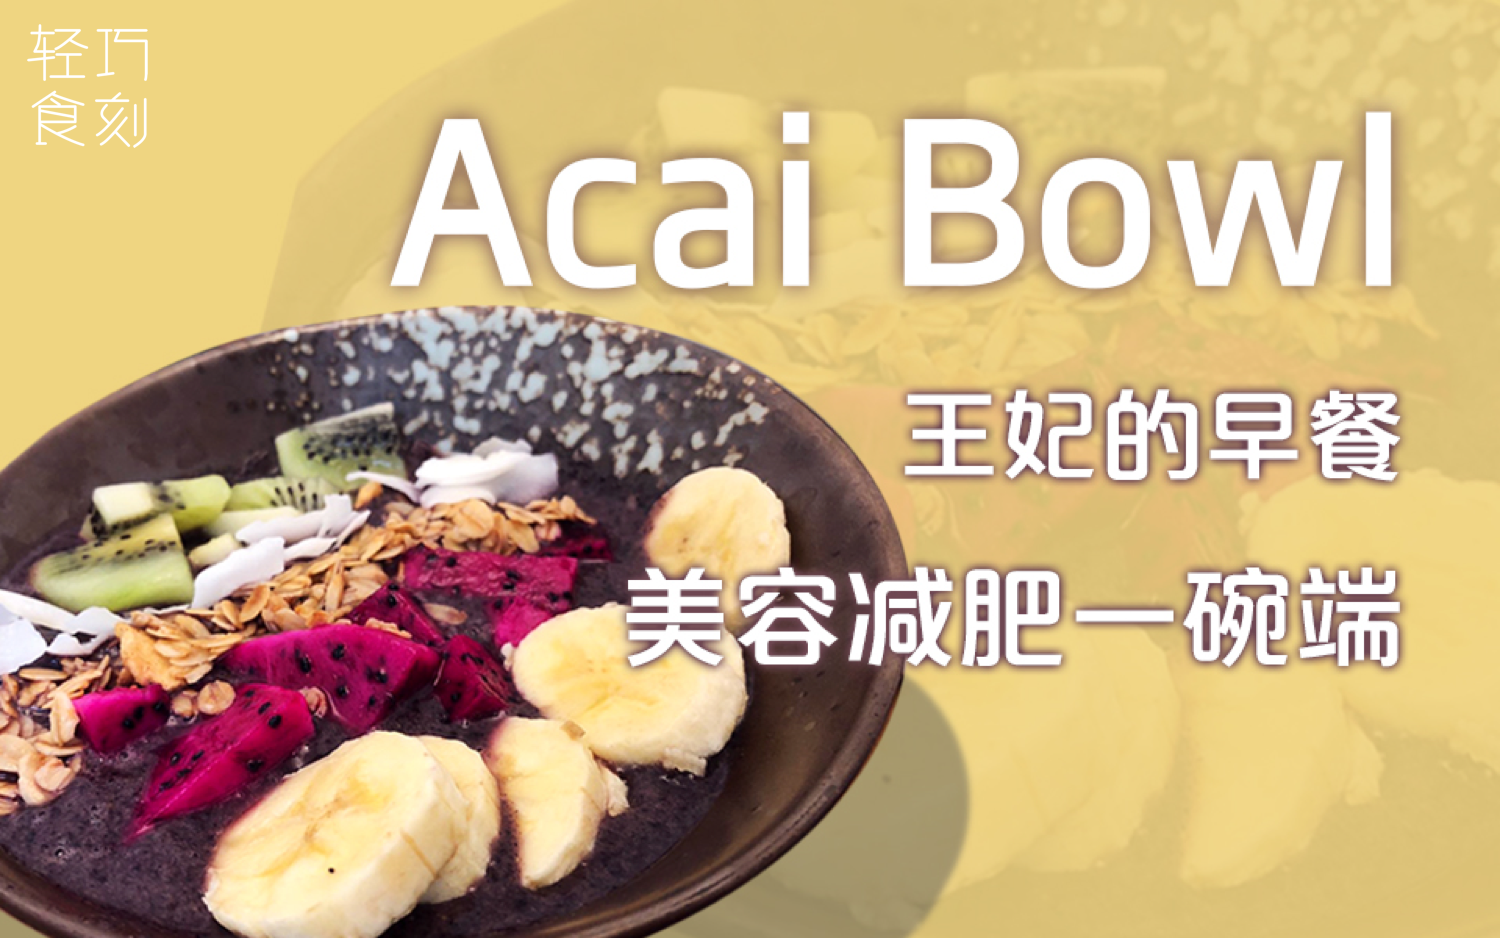 【轻巧食刻】巴西莓碗Acai Bowl